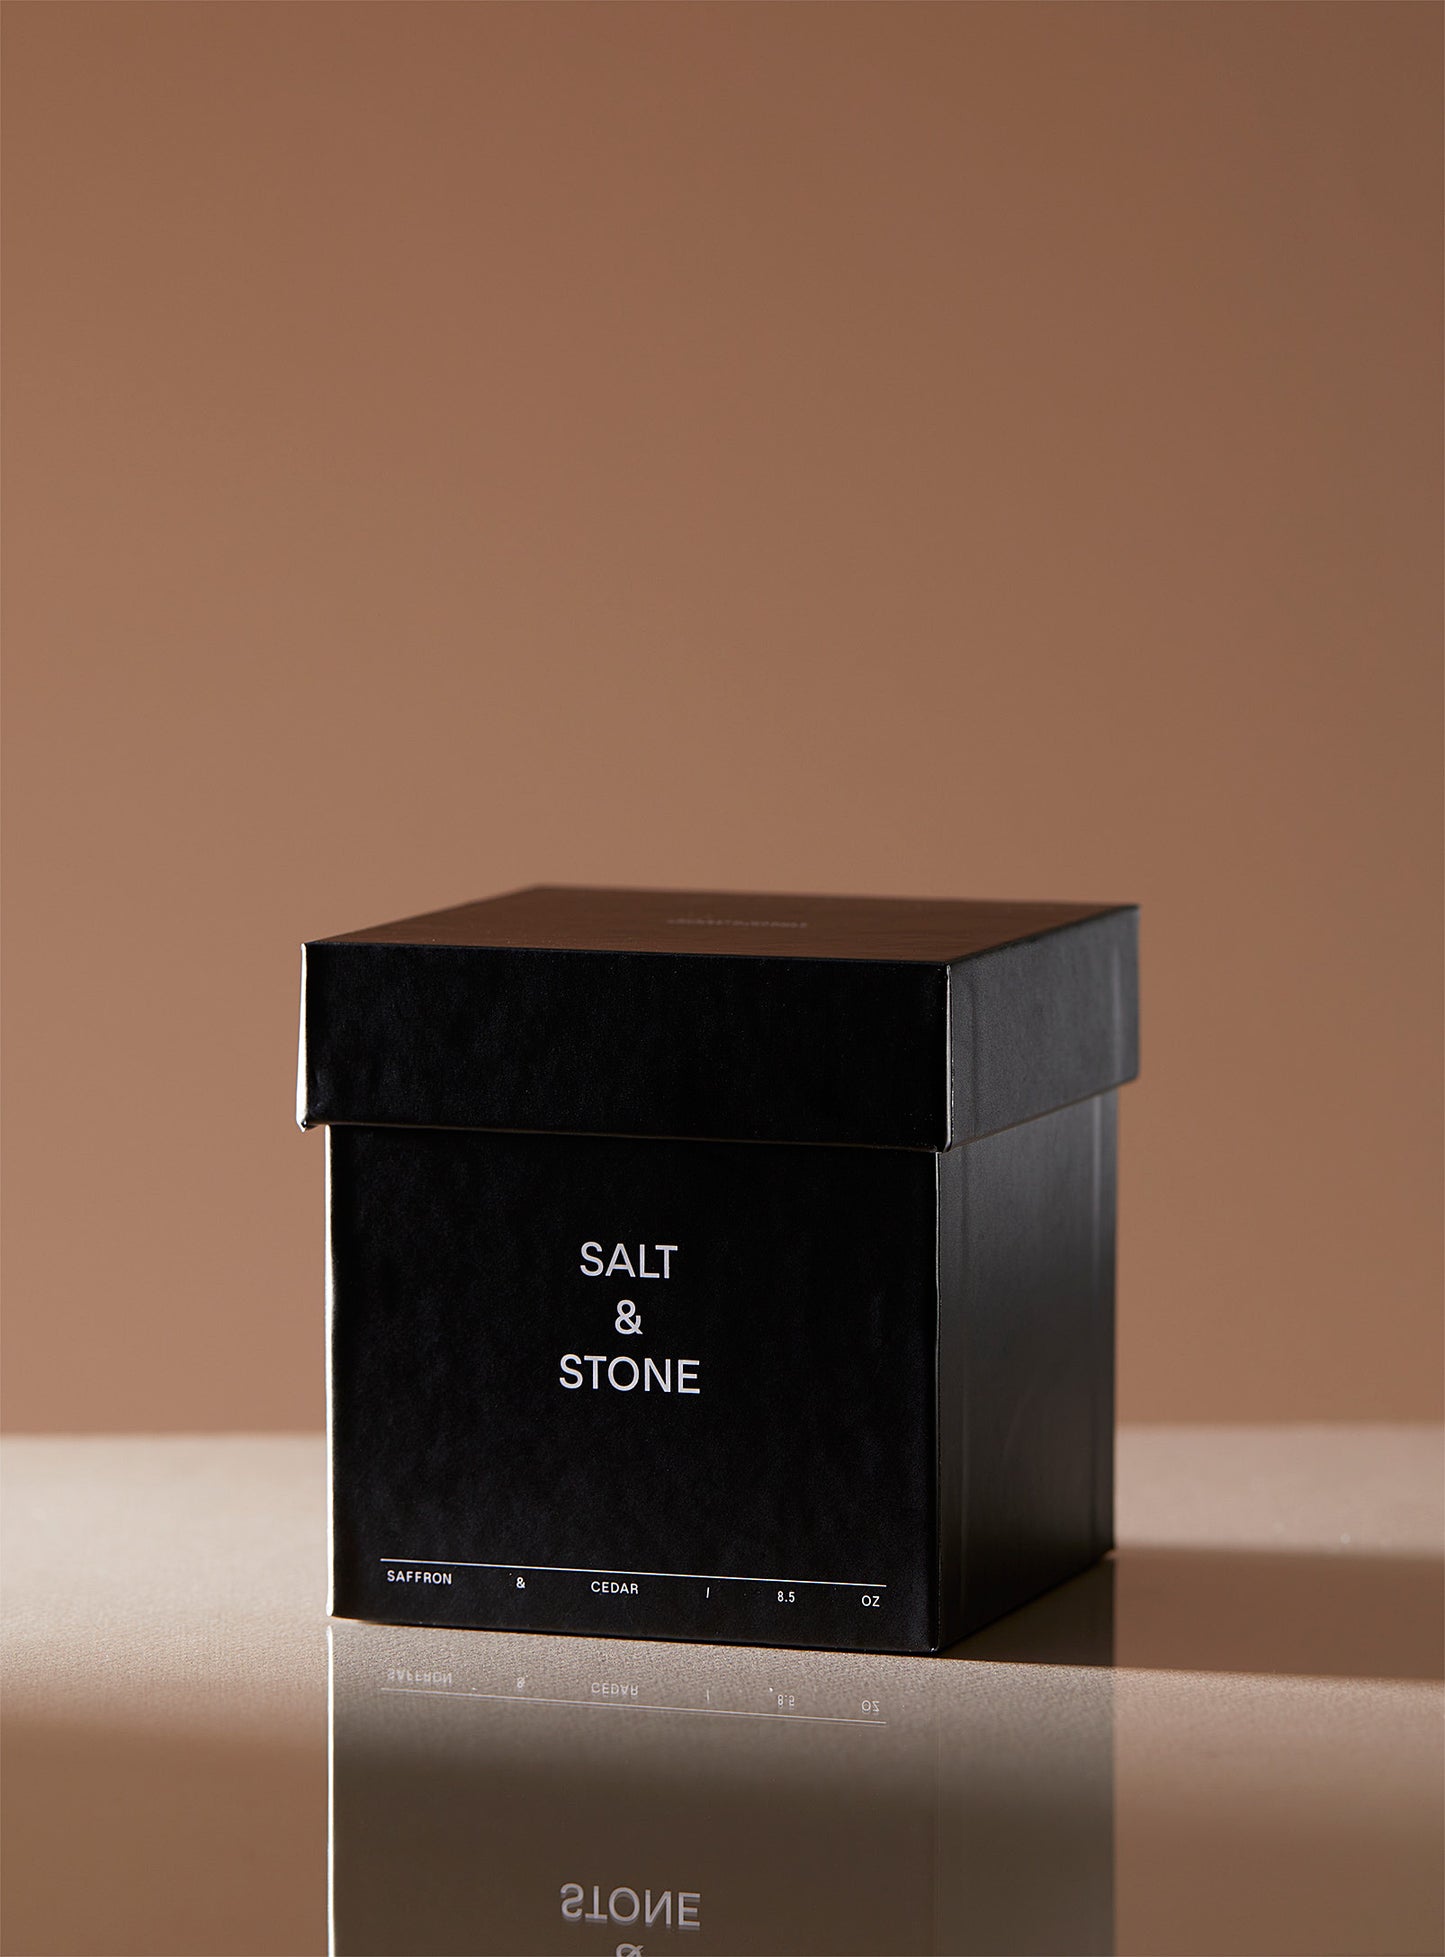 Salt &amp; Stone - The saffron and cedar scented candle